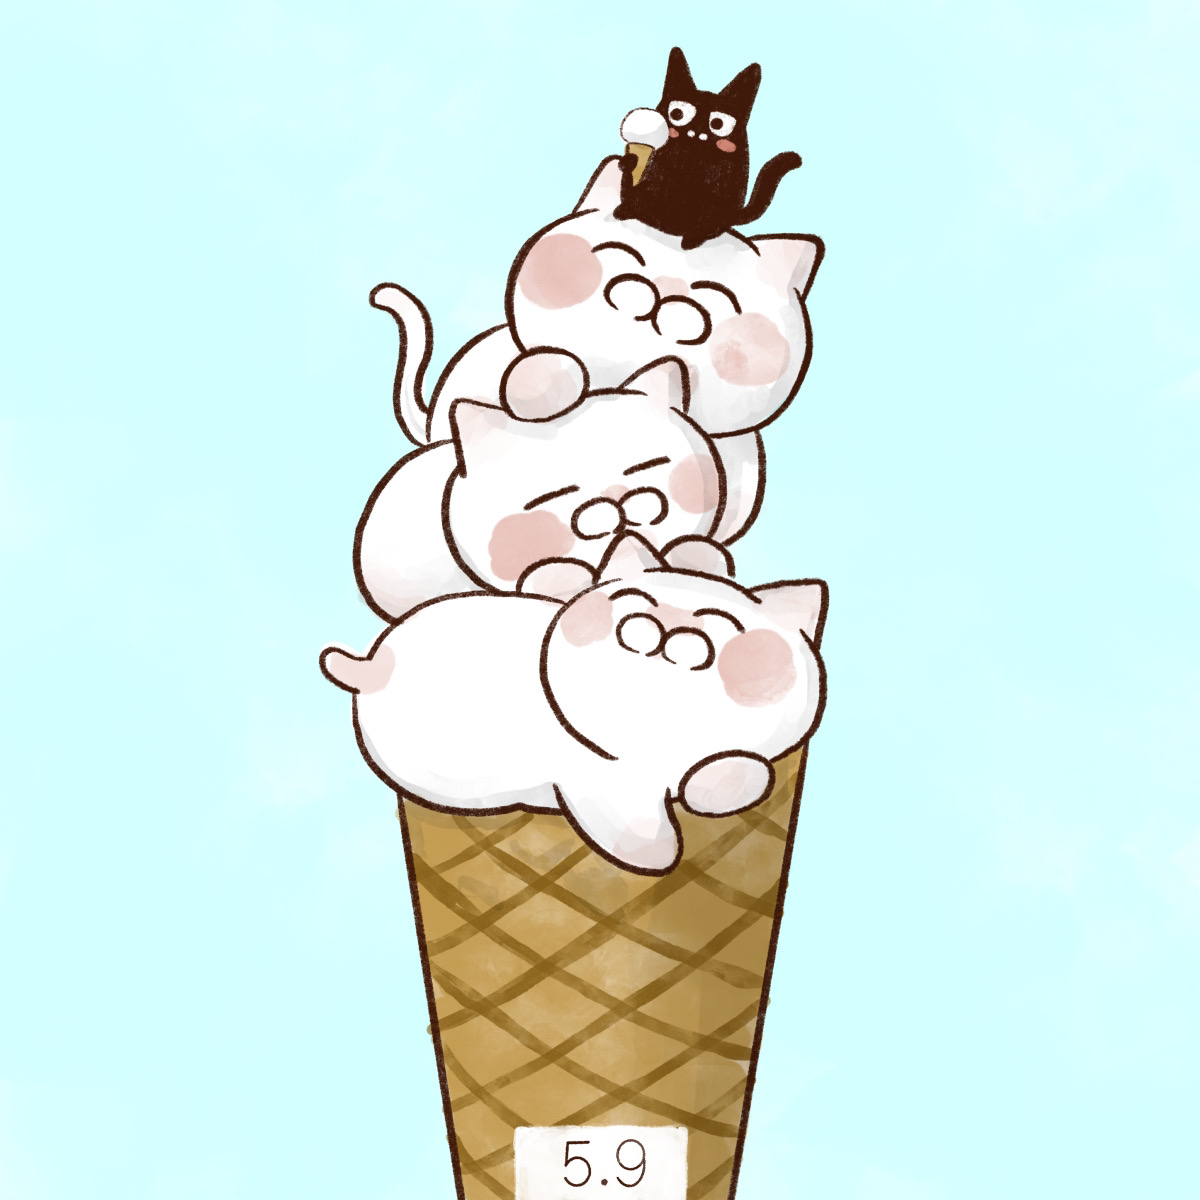 「5月9日【アイスクリームの日】 社団法人日本アイスクリーム協会が1965年に制定」|大和猫のイラスト